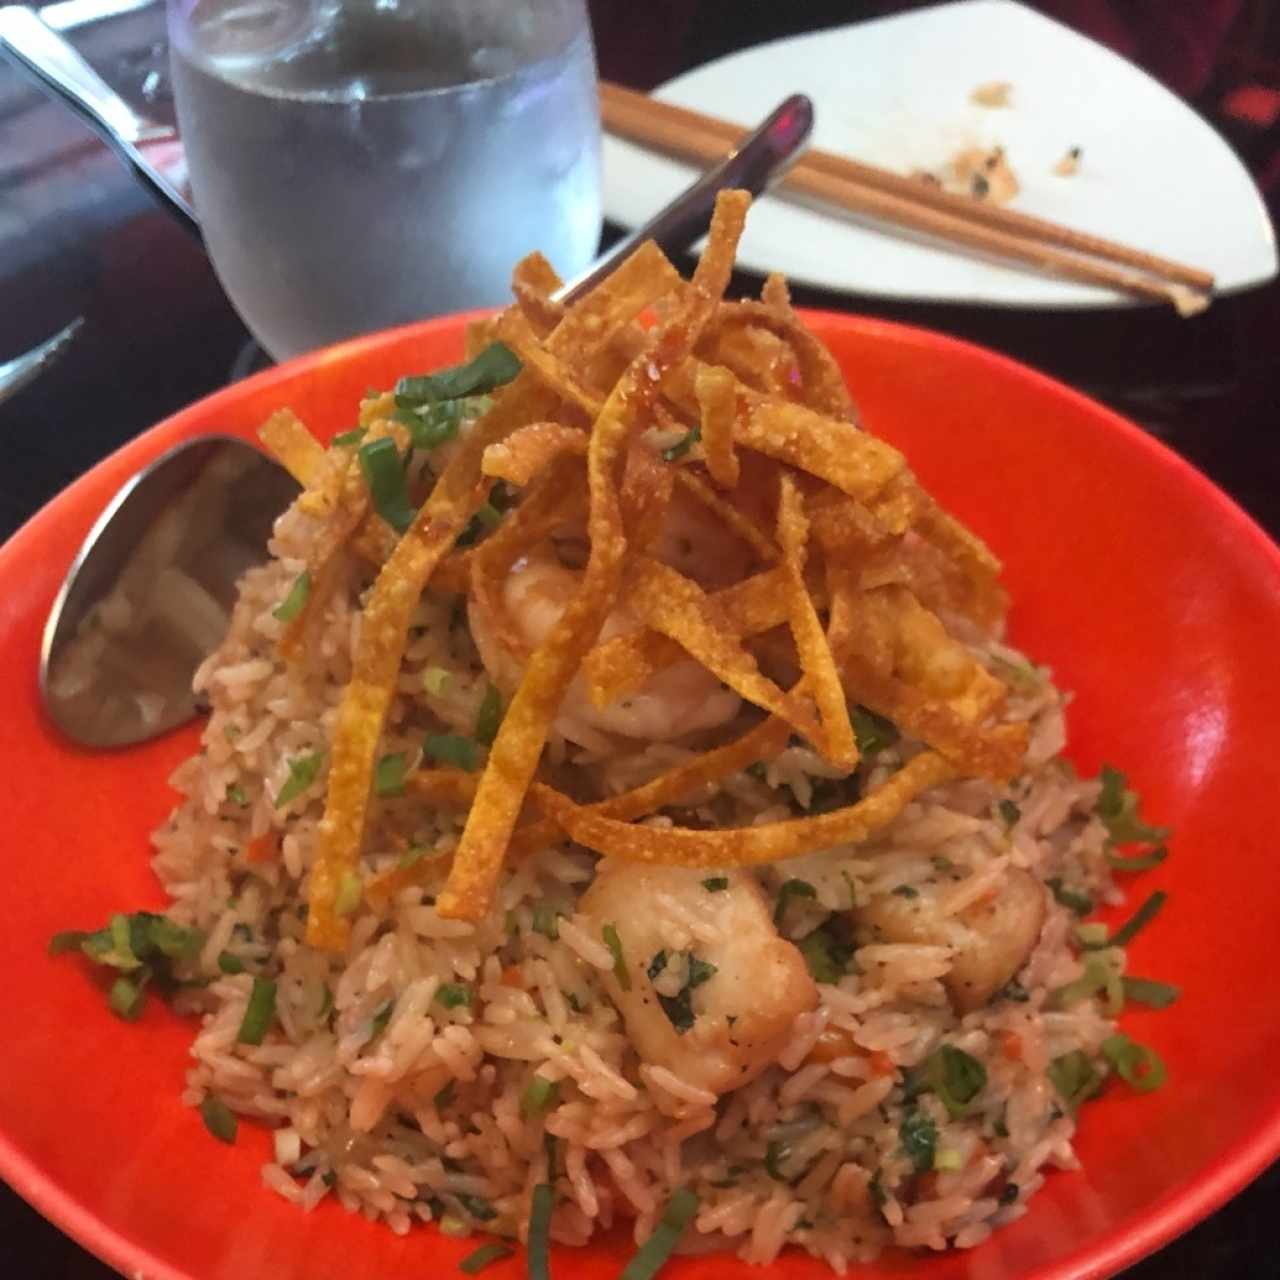 arroz tropical